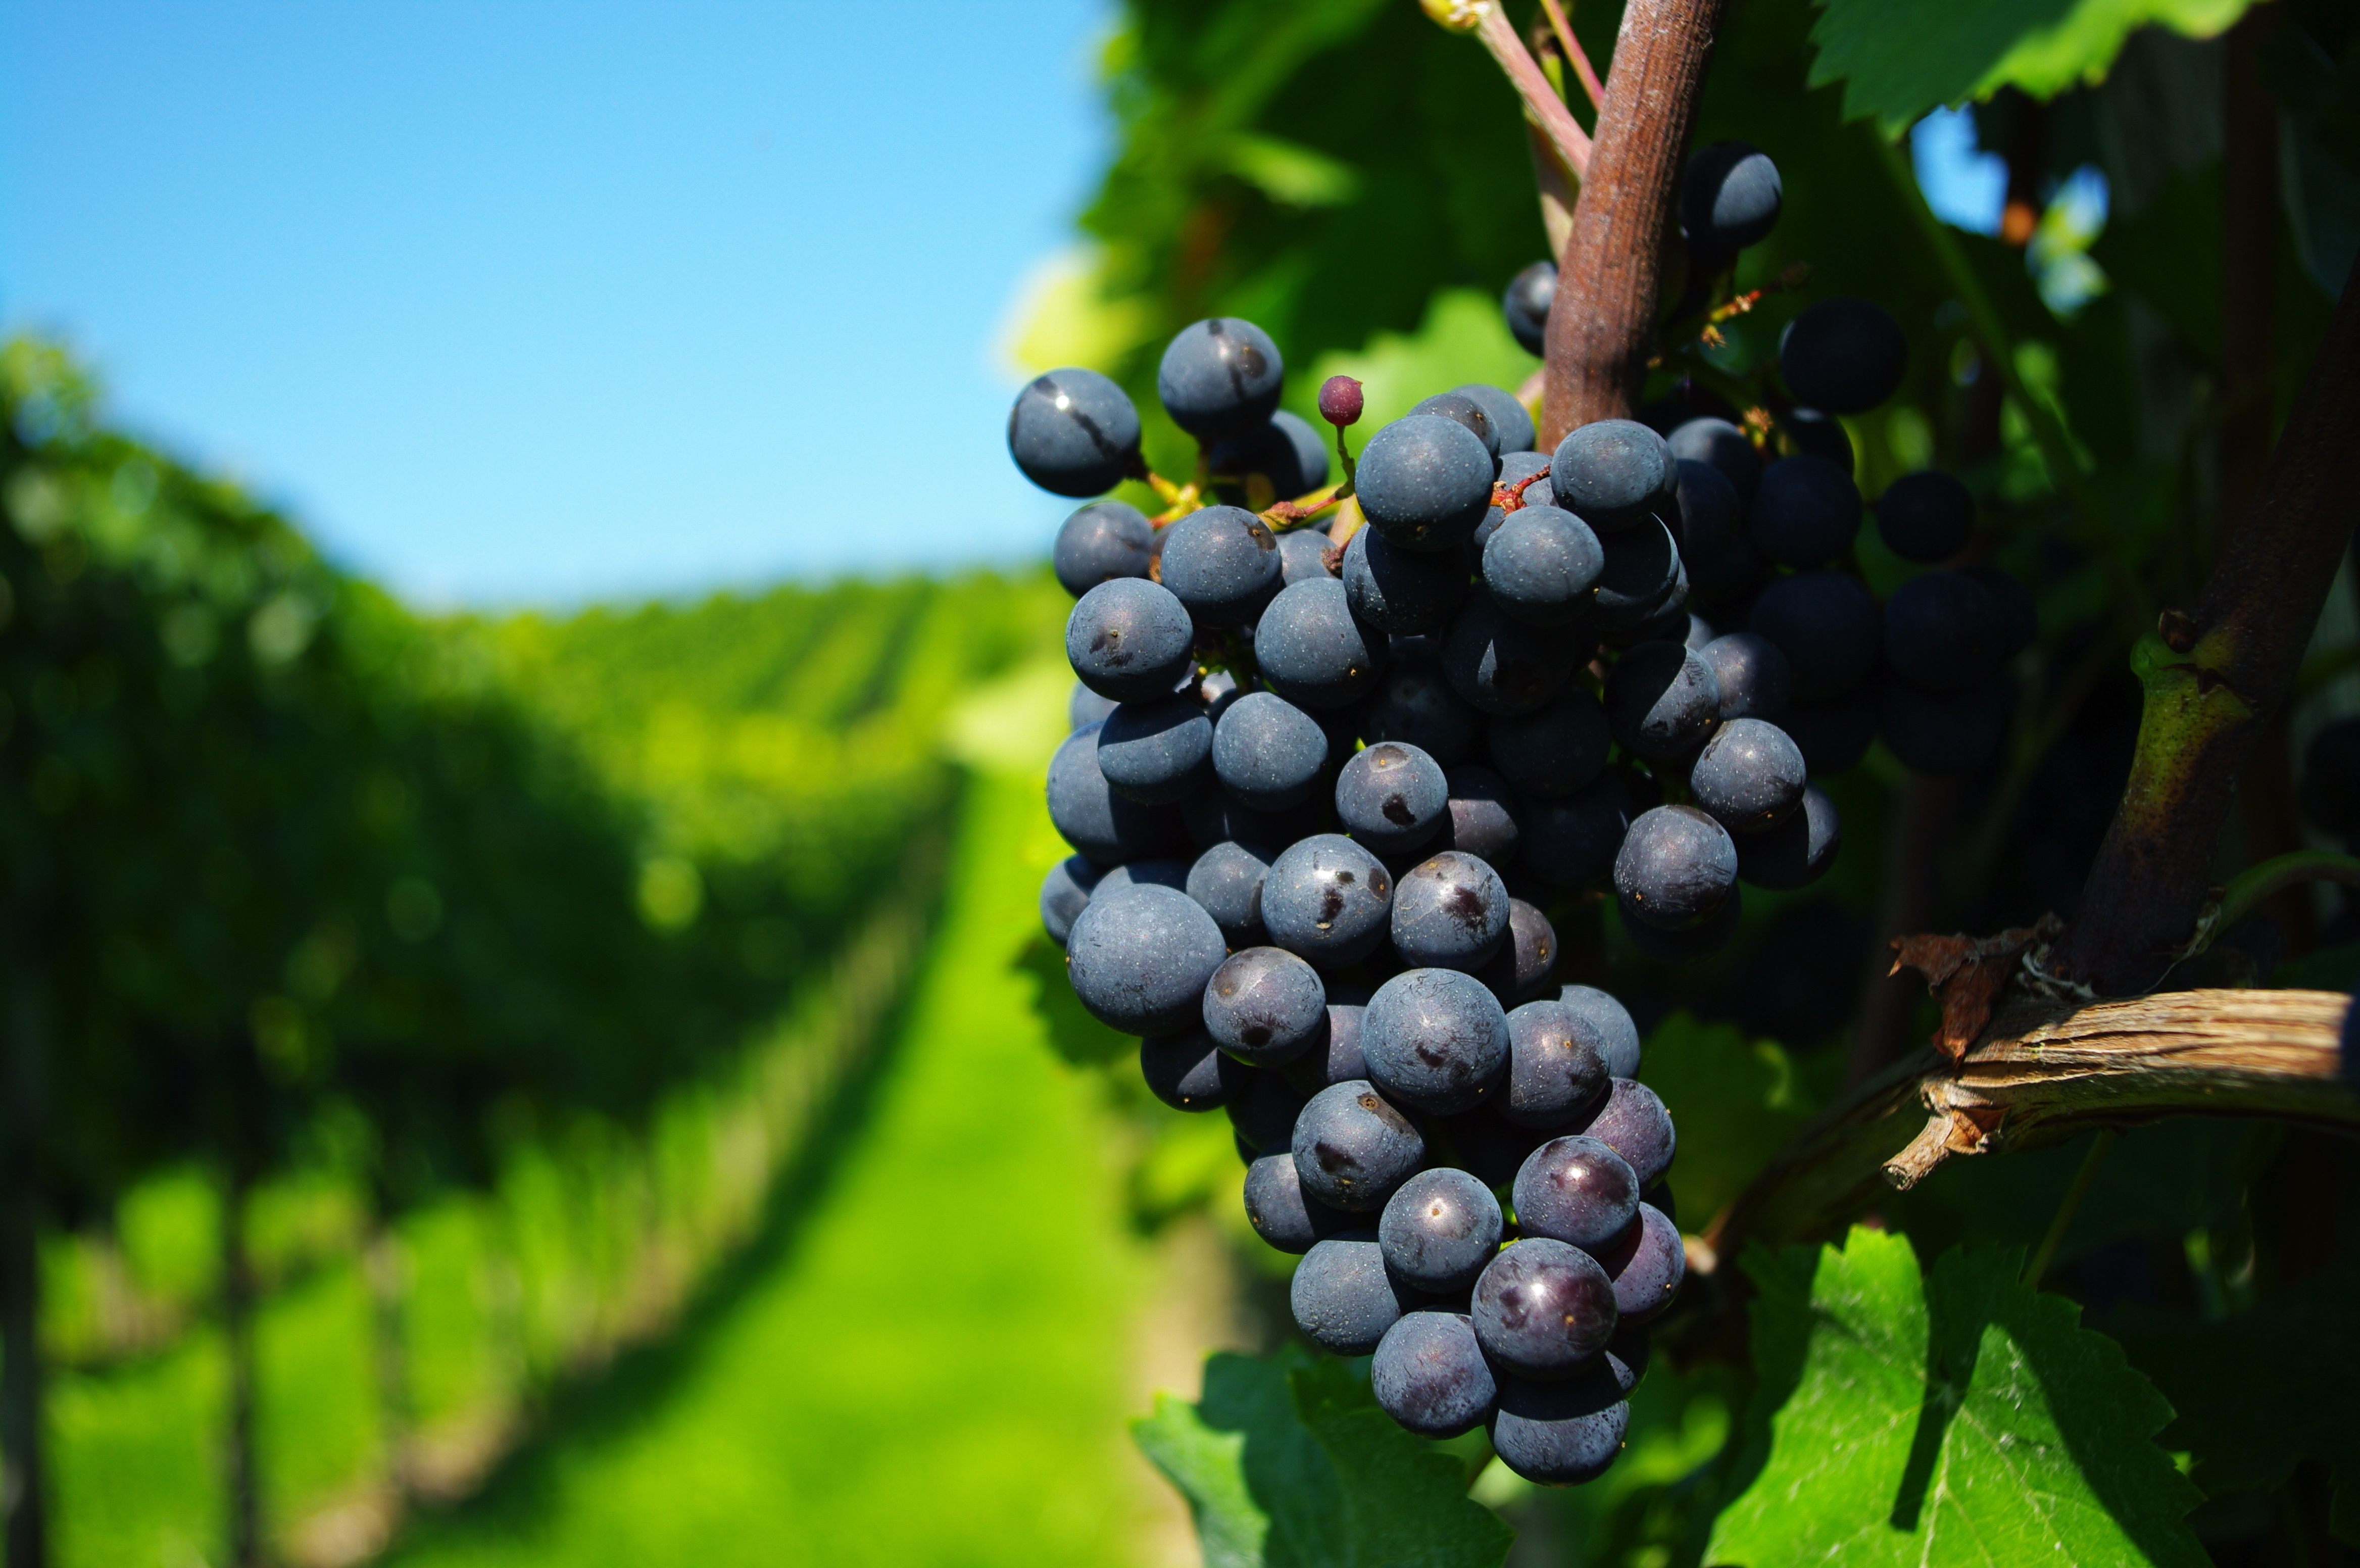 Правильно подкормленный виноград весной в состоянии сформировать гроздья с достаточно крупными ягодами